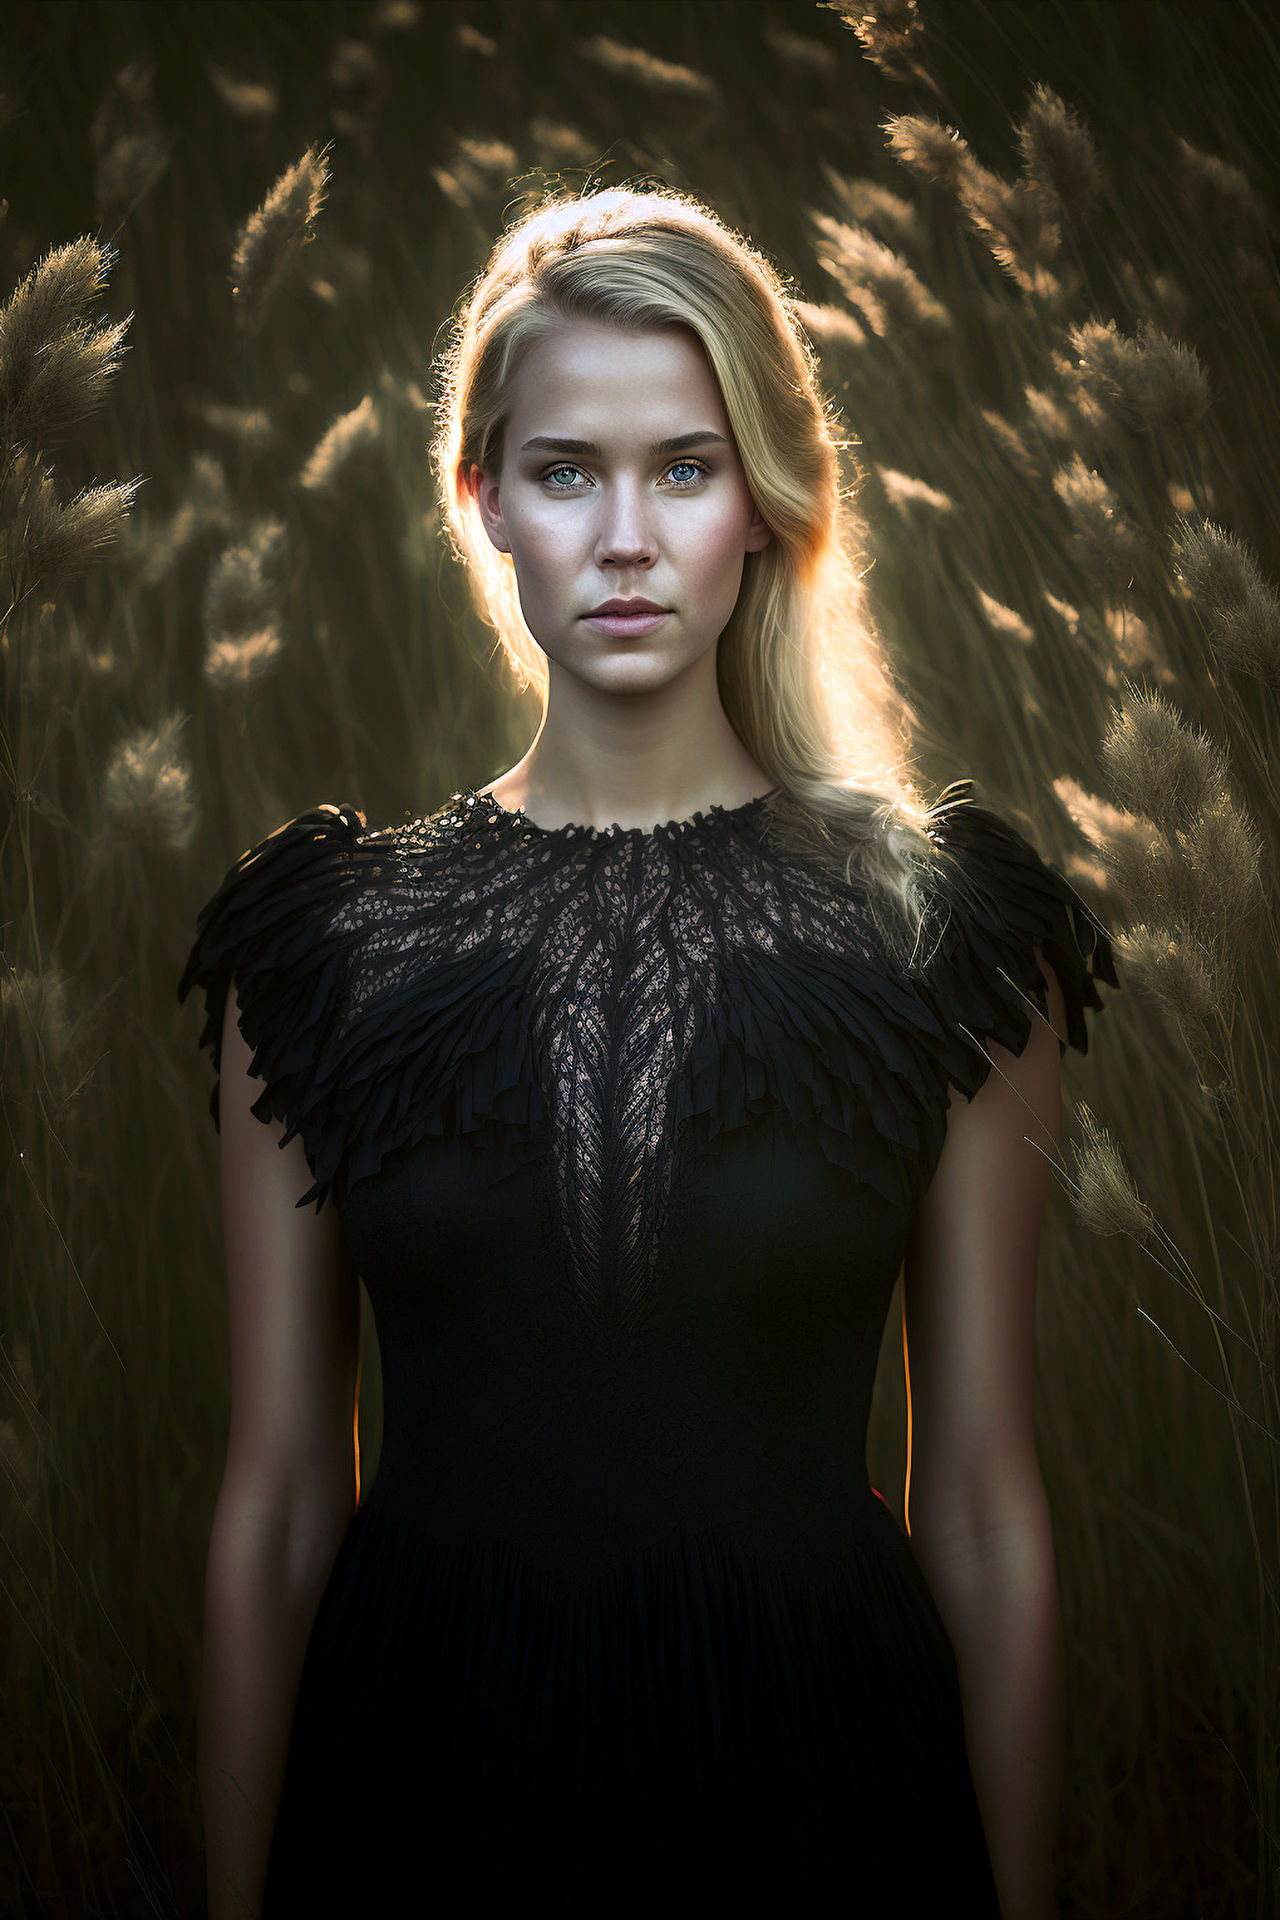 Elegant Woman in Black Dress by JayNL on DeviantArt